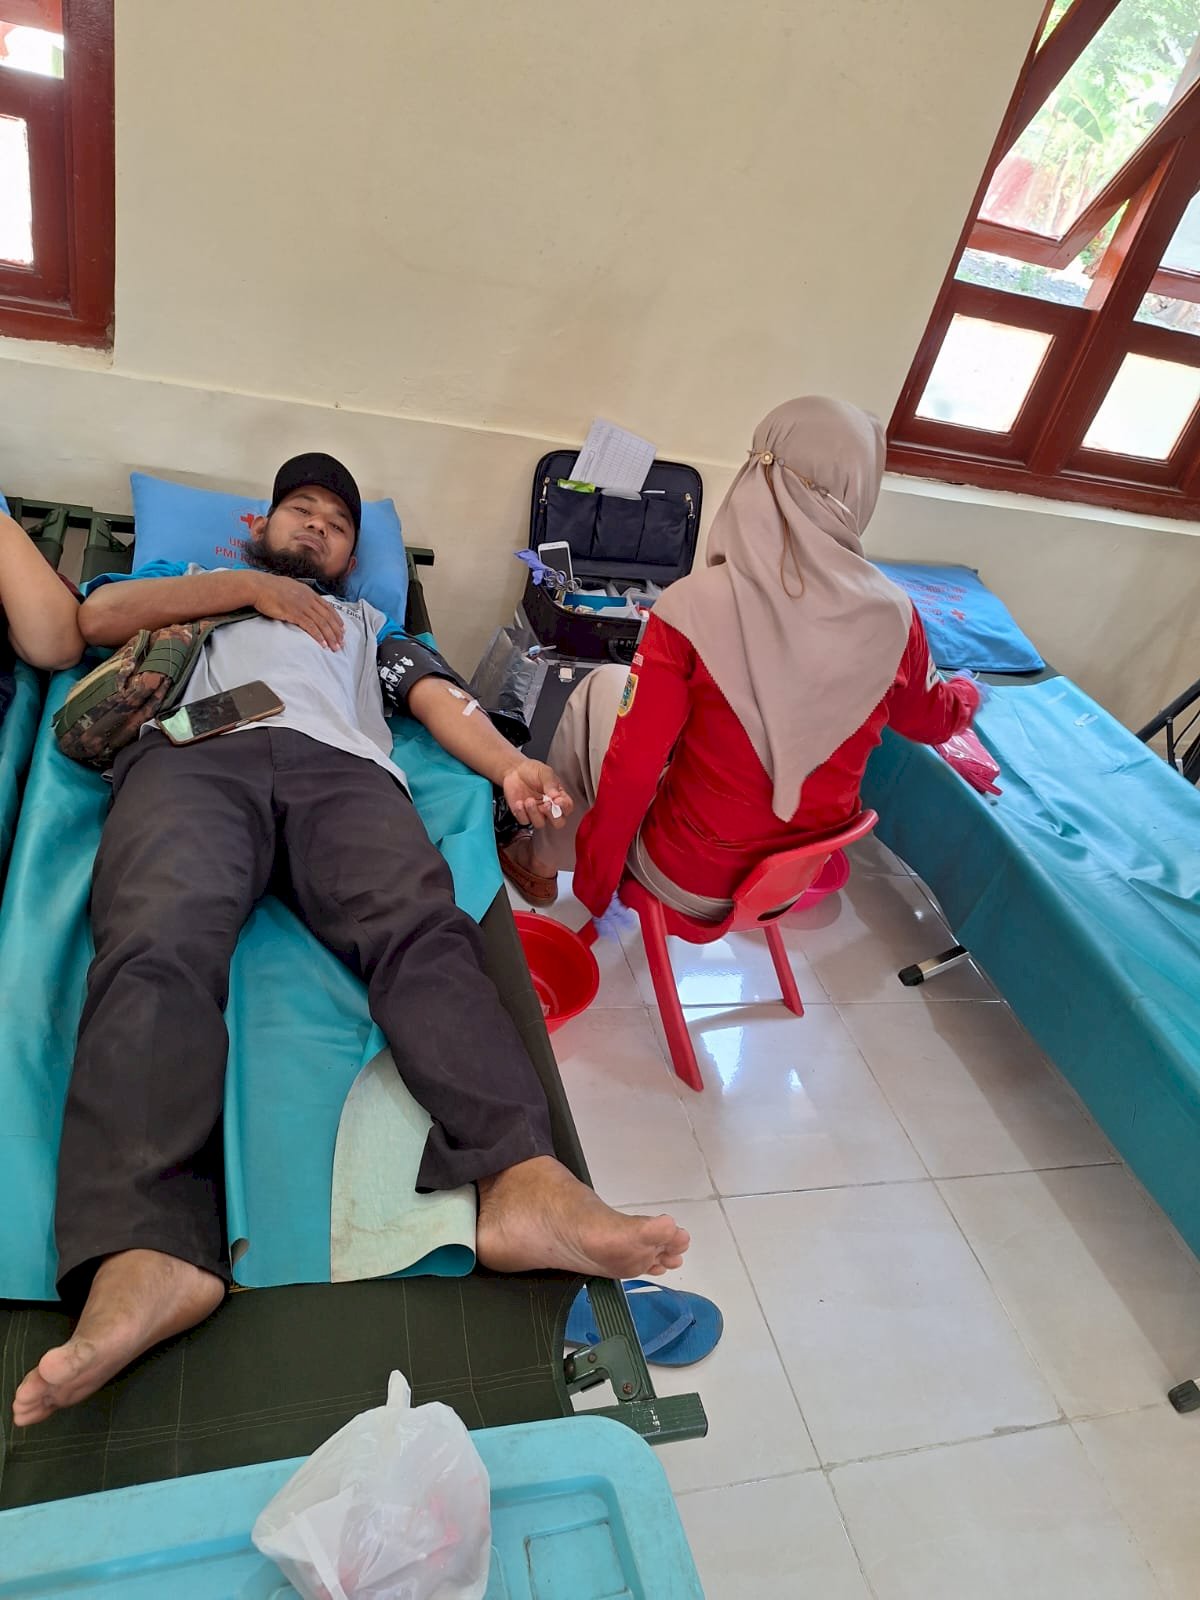 Kegiatan Donor Darah di Aula Kecamatan Trucuk